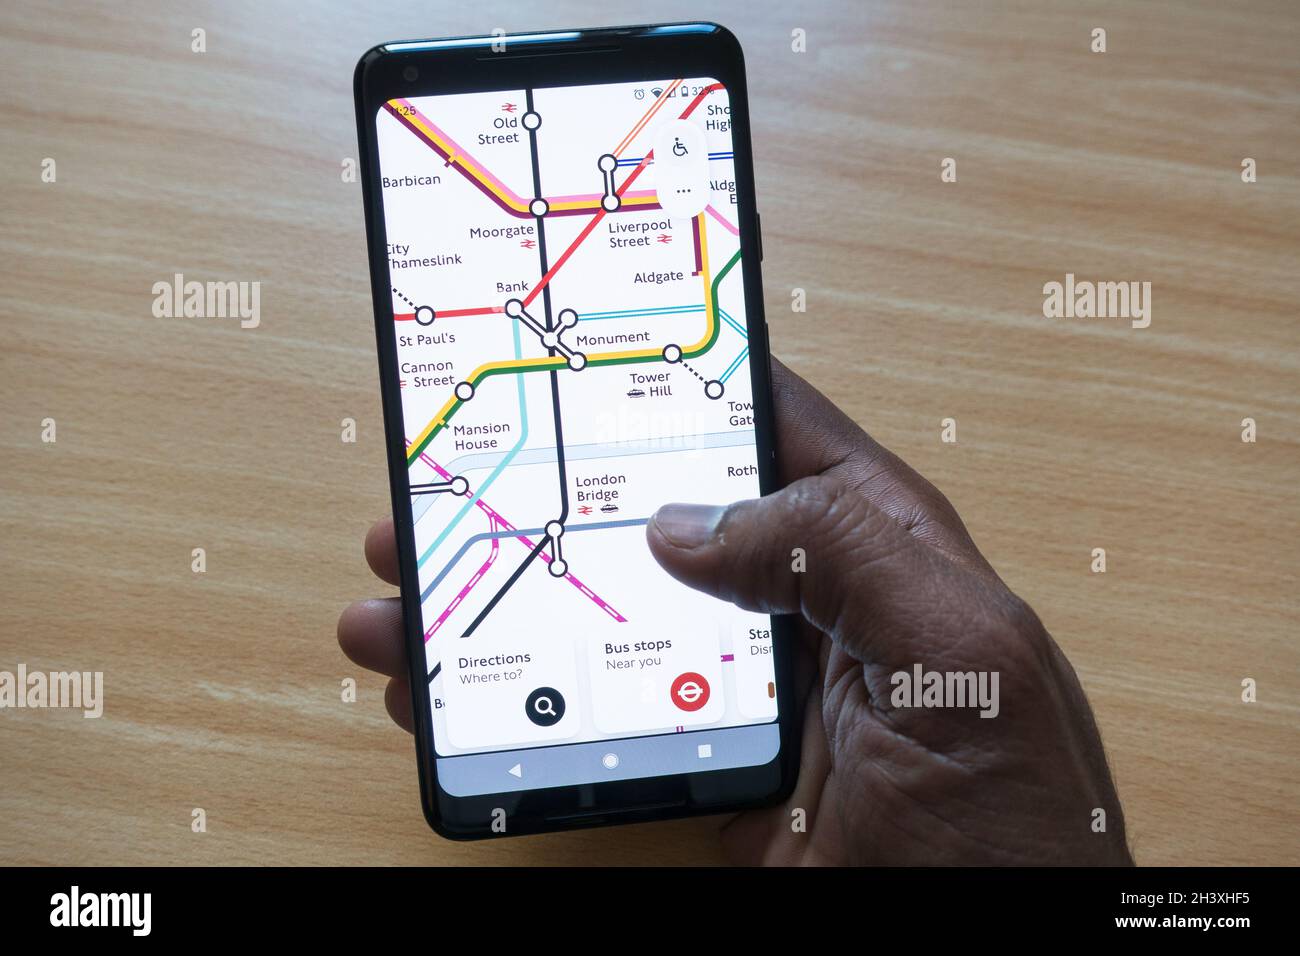 Hombre adulto sosteniendo un smartphone con un mapa de London Tube en la pantalla comprobando las conexiones de la estación Foto de stock